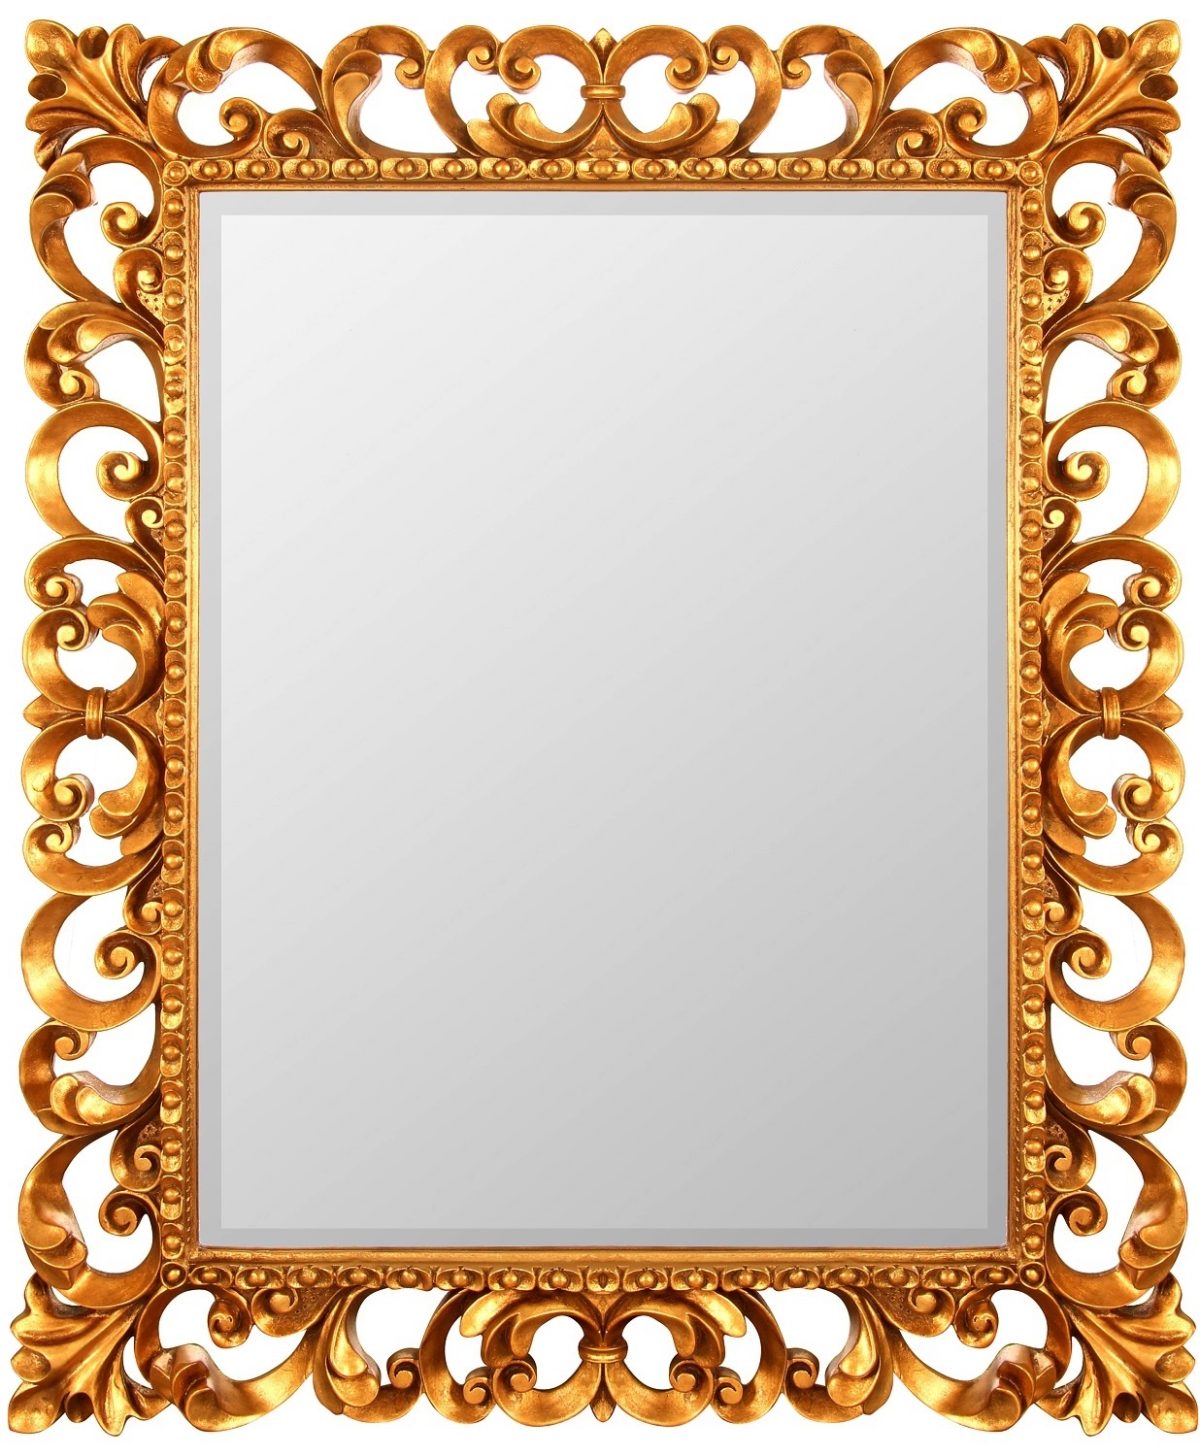 Зеркало в резной раме Bristol Gold фото и цена, купить